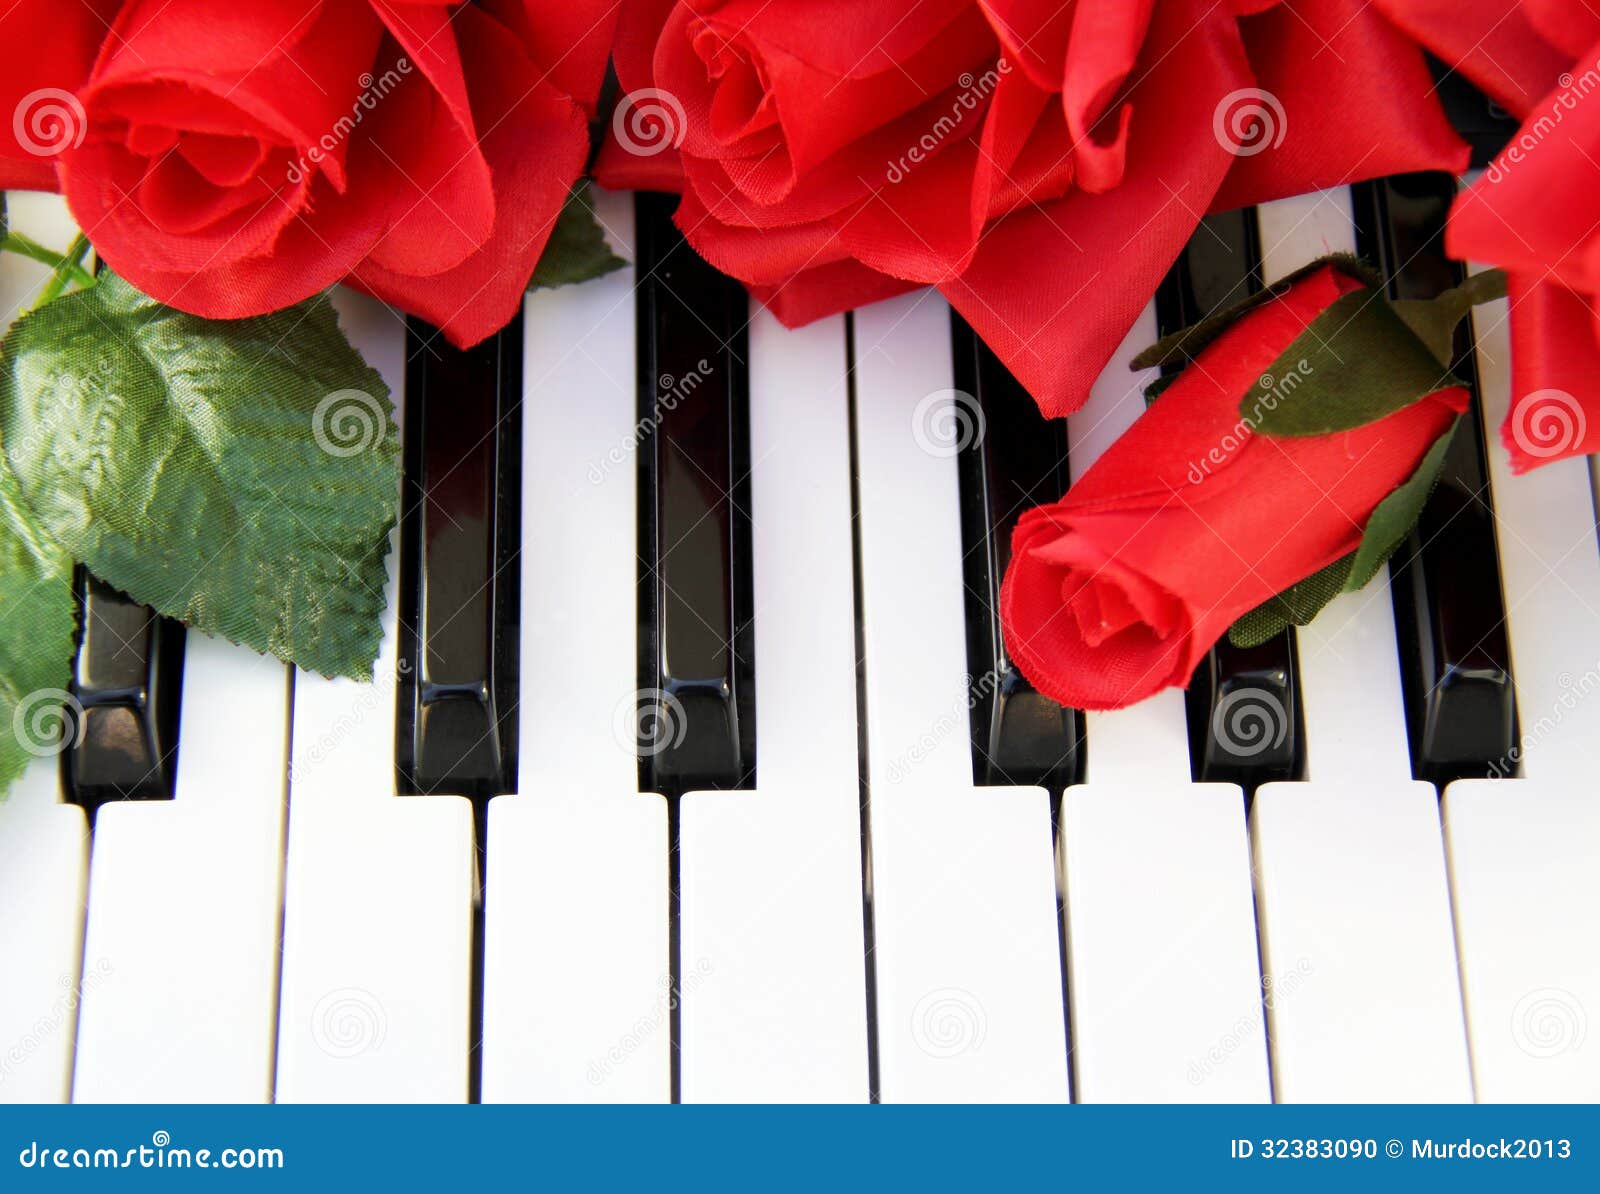 На клавишах тургенева. Пианино с цветами. Цветы на клавишах. Красные розы на рояле.